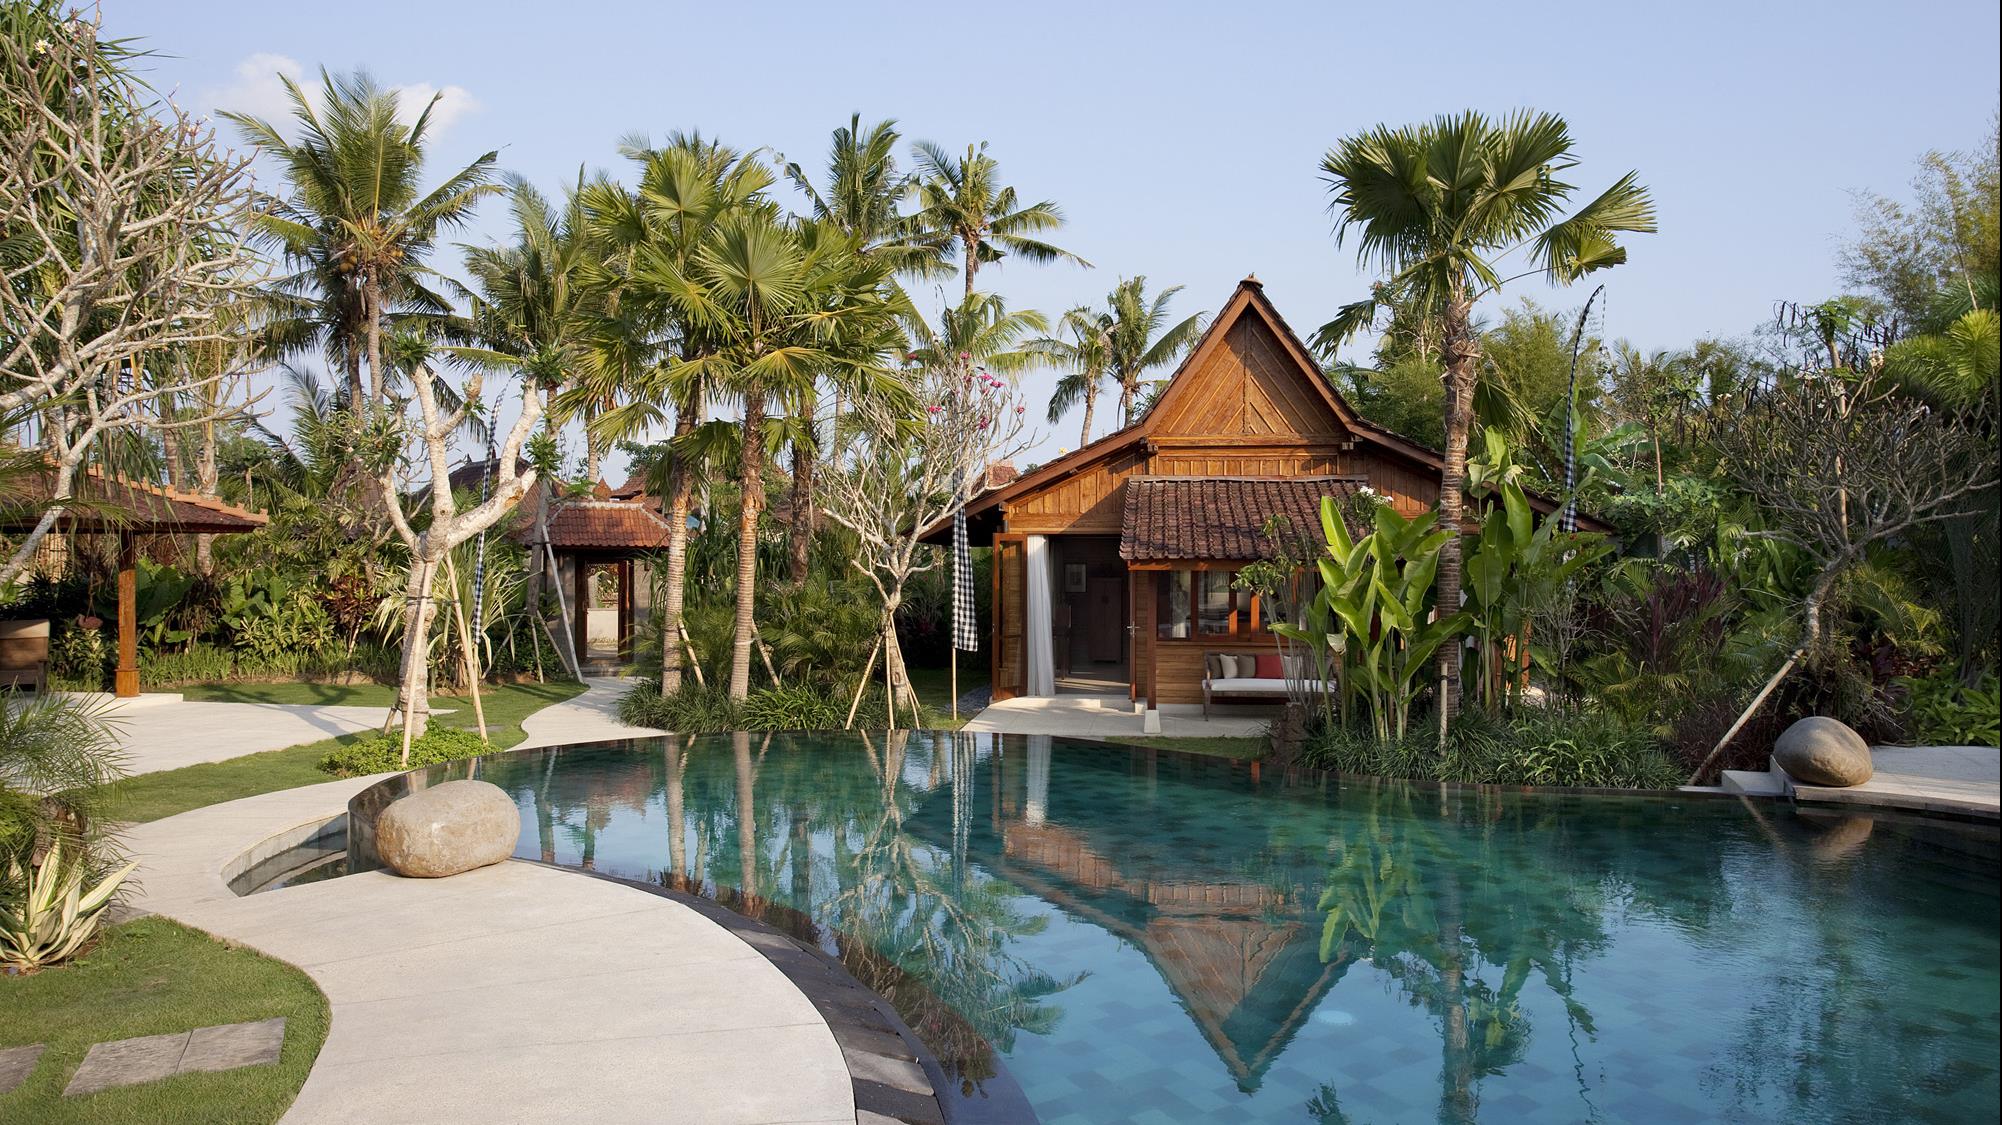  Villa  Sati 4 Bedrooms Sleeps 8 Pool Canggu Bali 